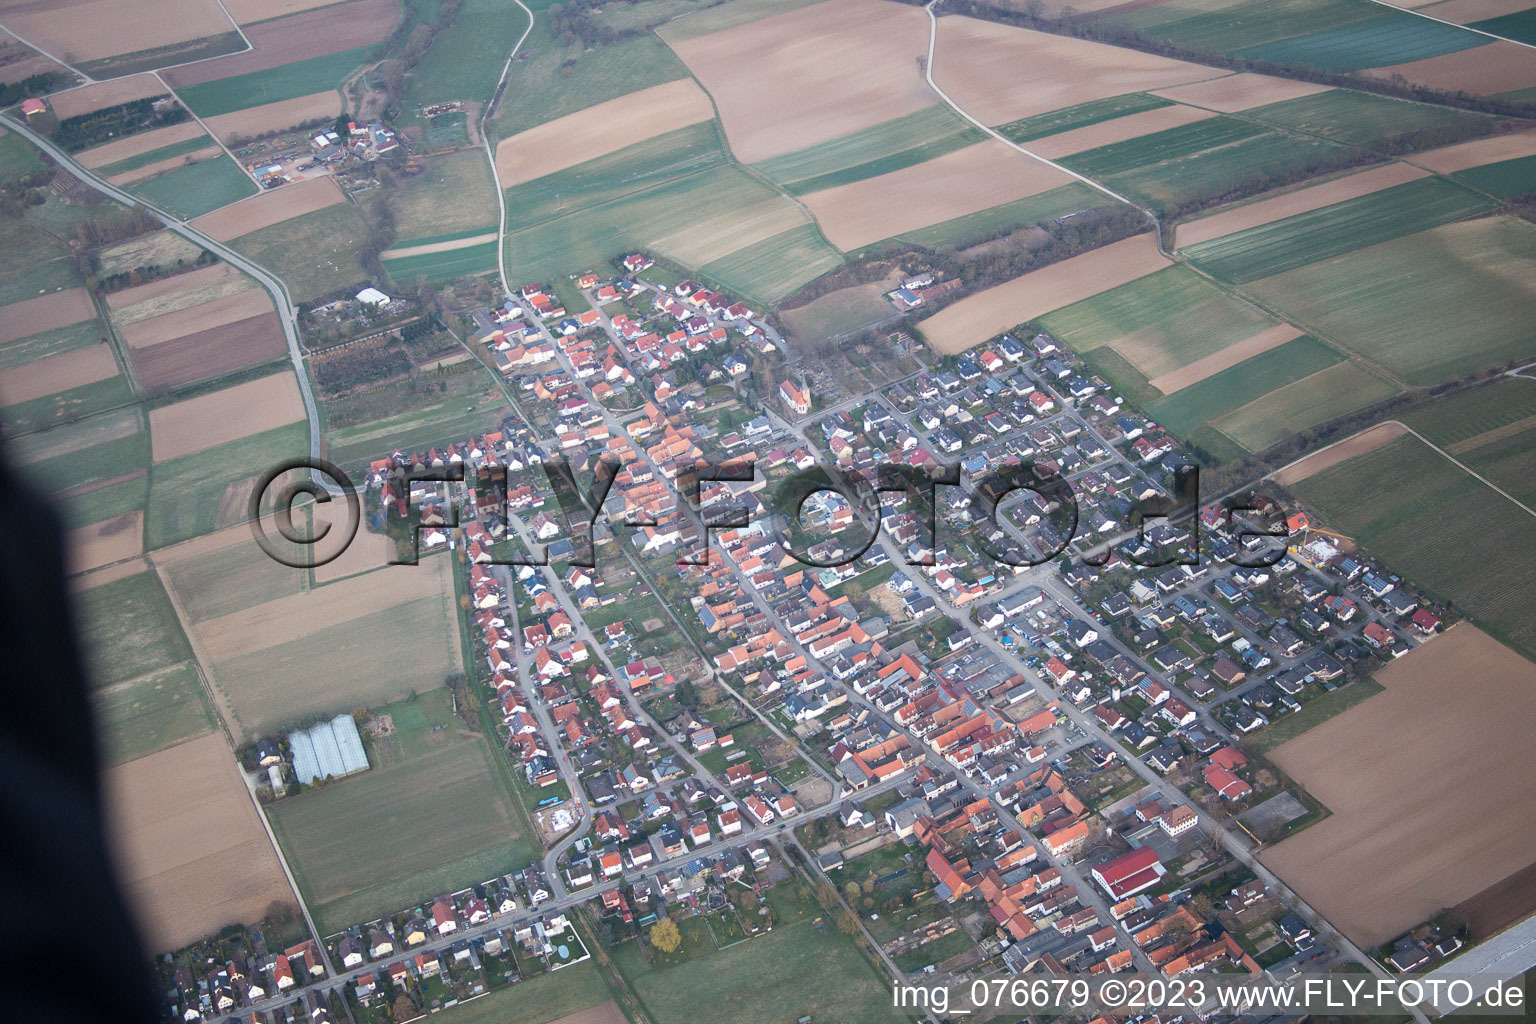 Freckenfeld im Bundesland Rheinland-Pfalz, Deutschland aus der Luft betrachtet